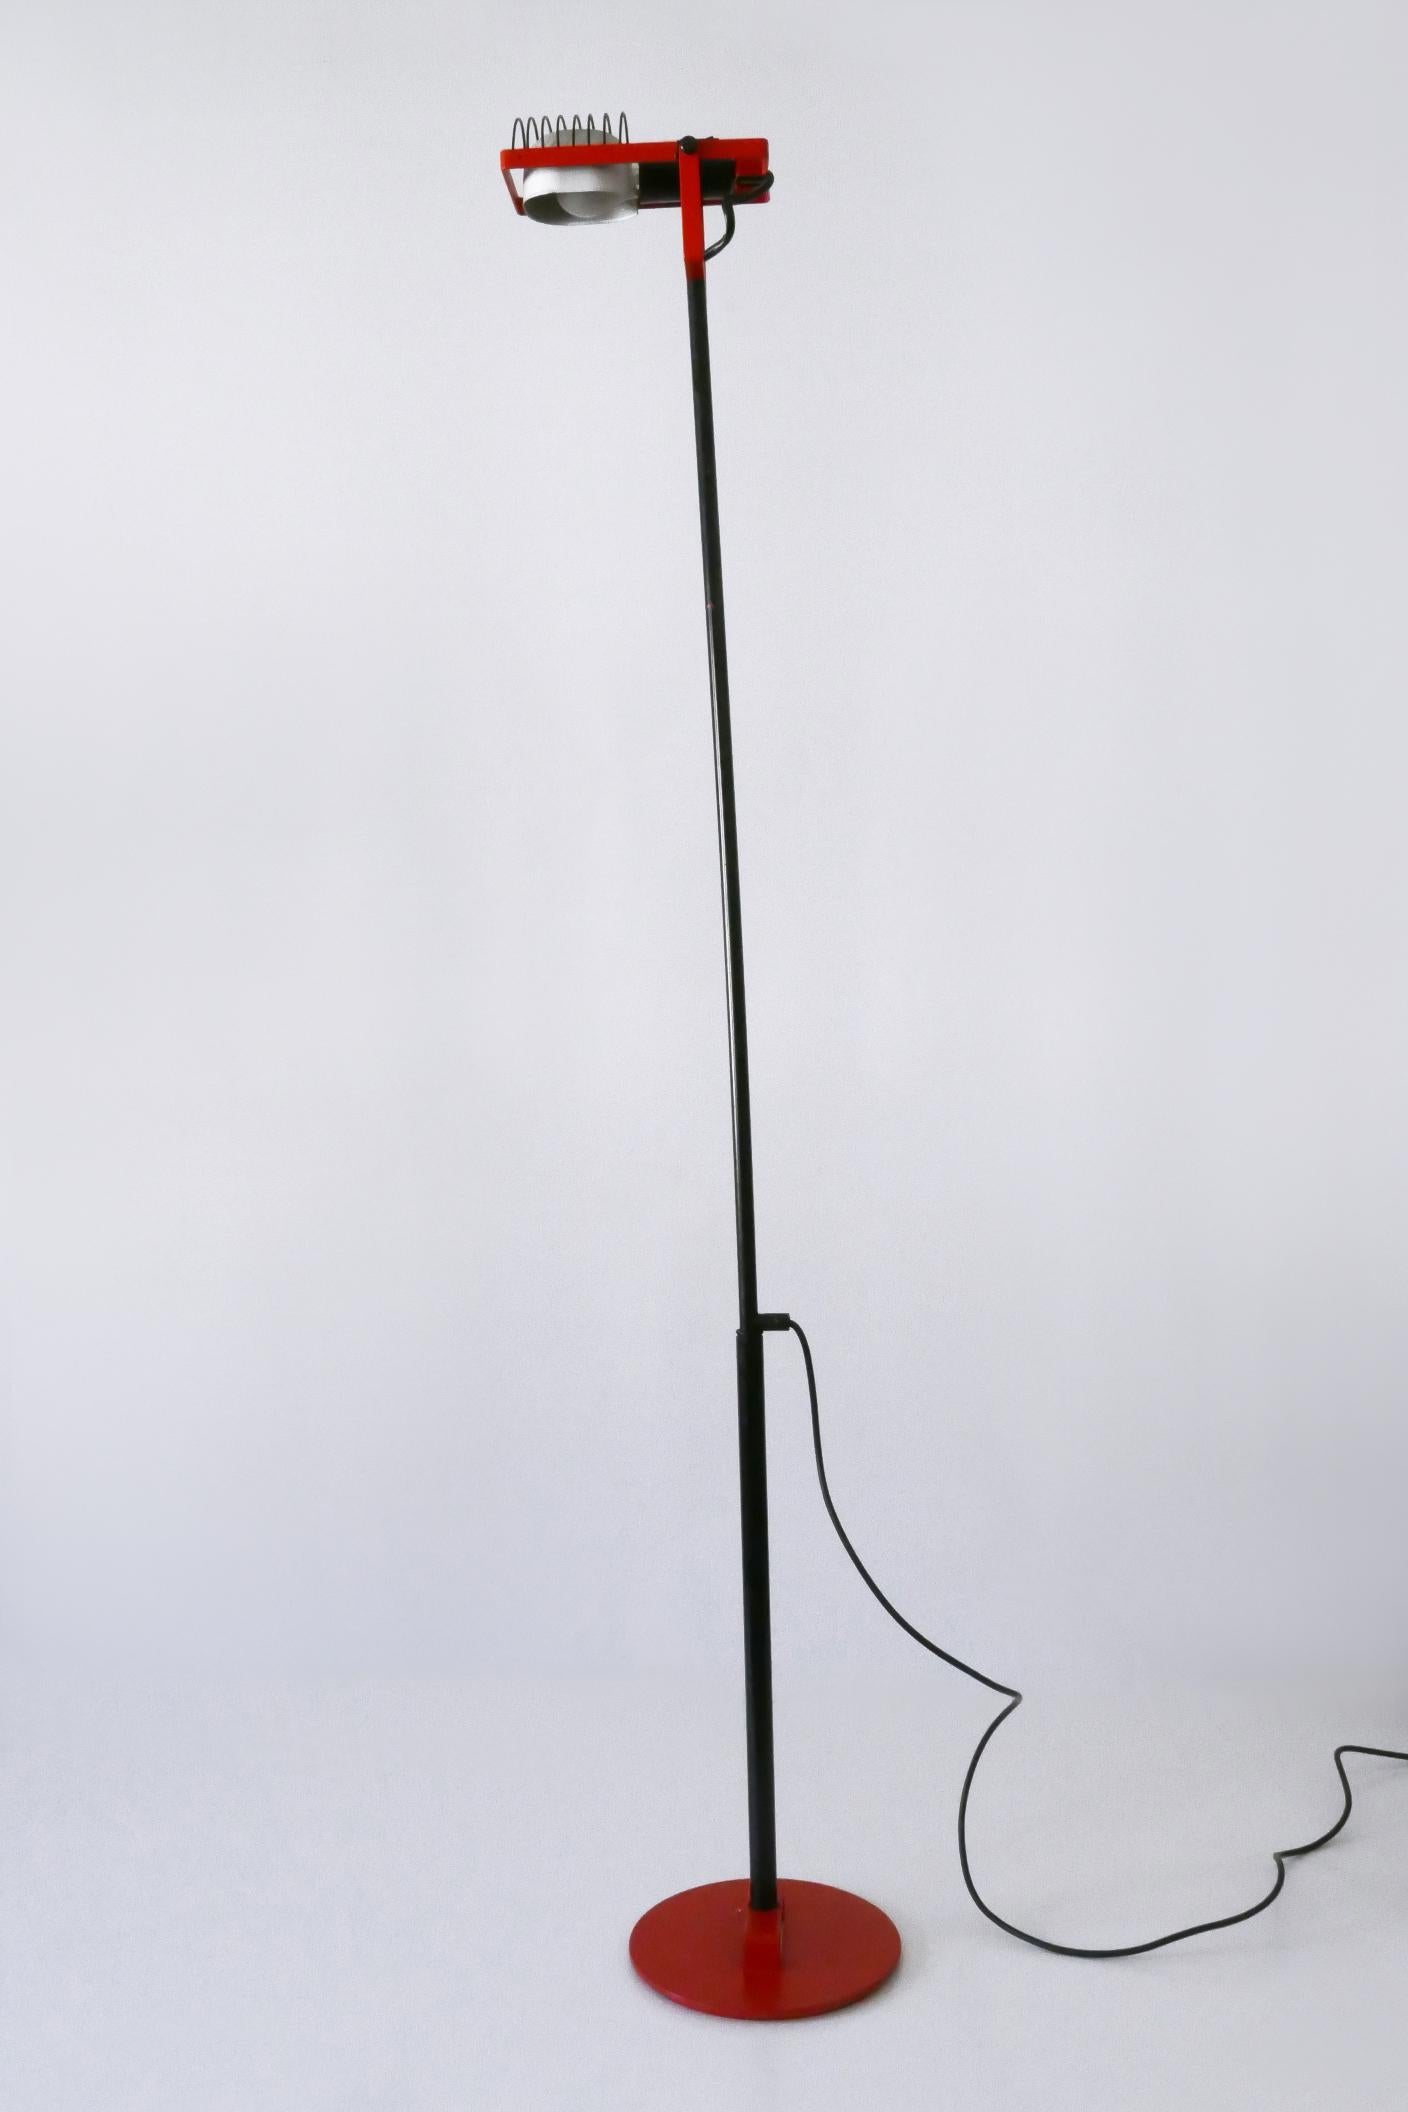 Italian Telescopic Floor Lamp or Reading Light Sintesi by Ernesto Gismondi for Artemide For Sale